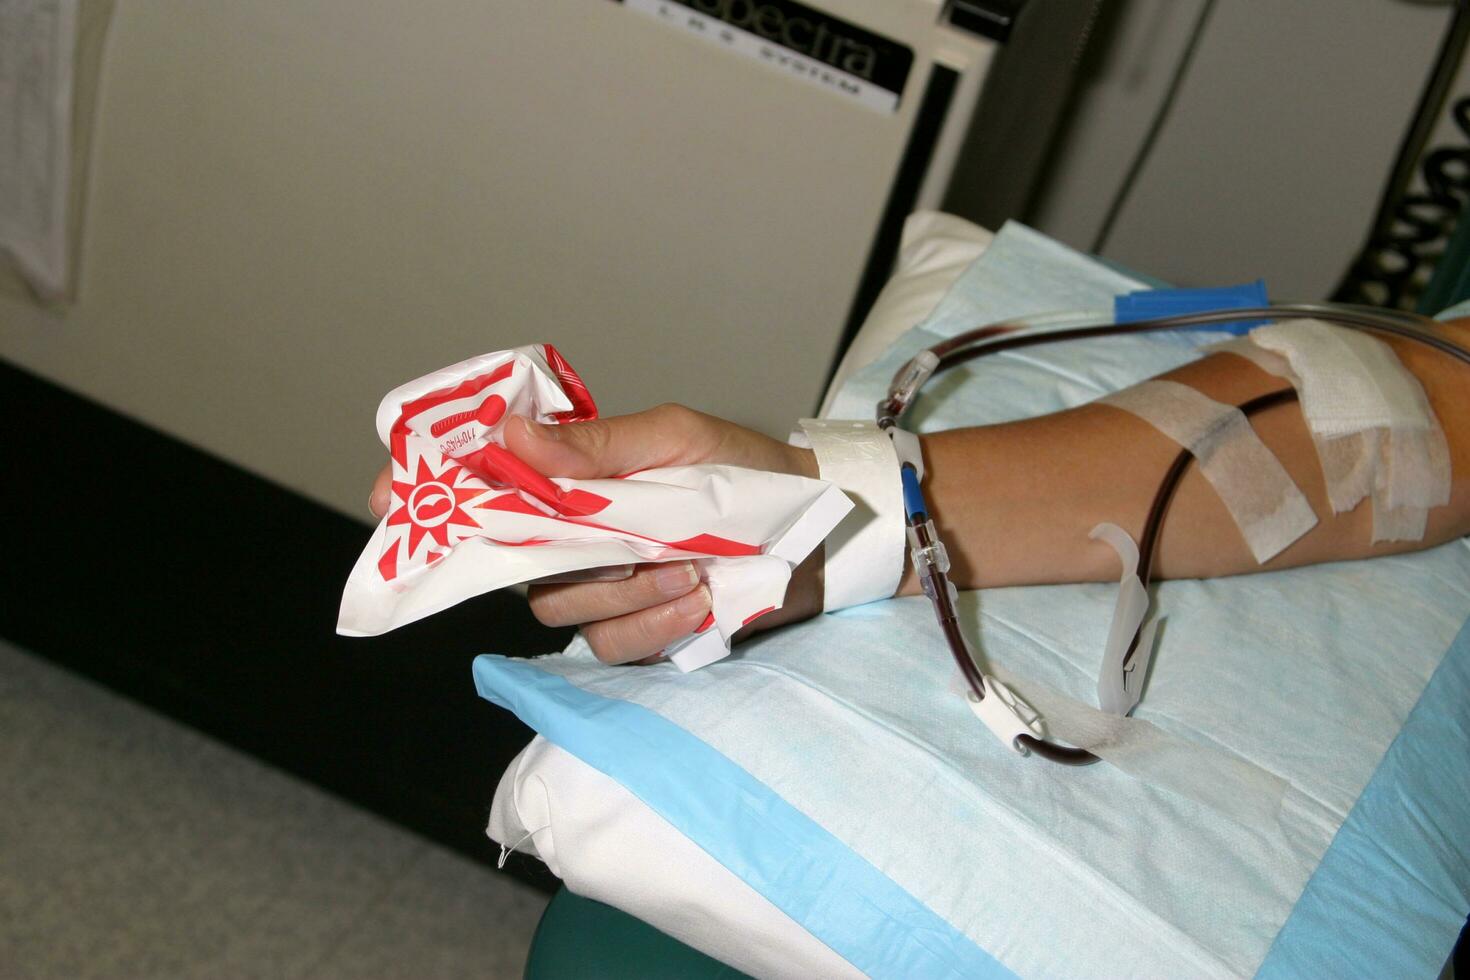 kimberline marron faire un don tige cellules pour utilisation dans transplantation à leucémie patient ville de espérer octobre 2005 2005 kathy huches huches photo